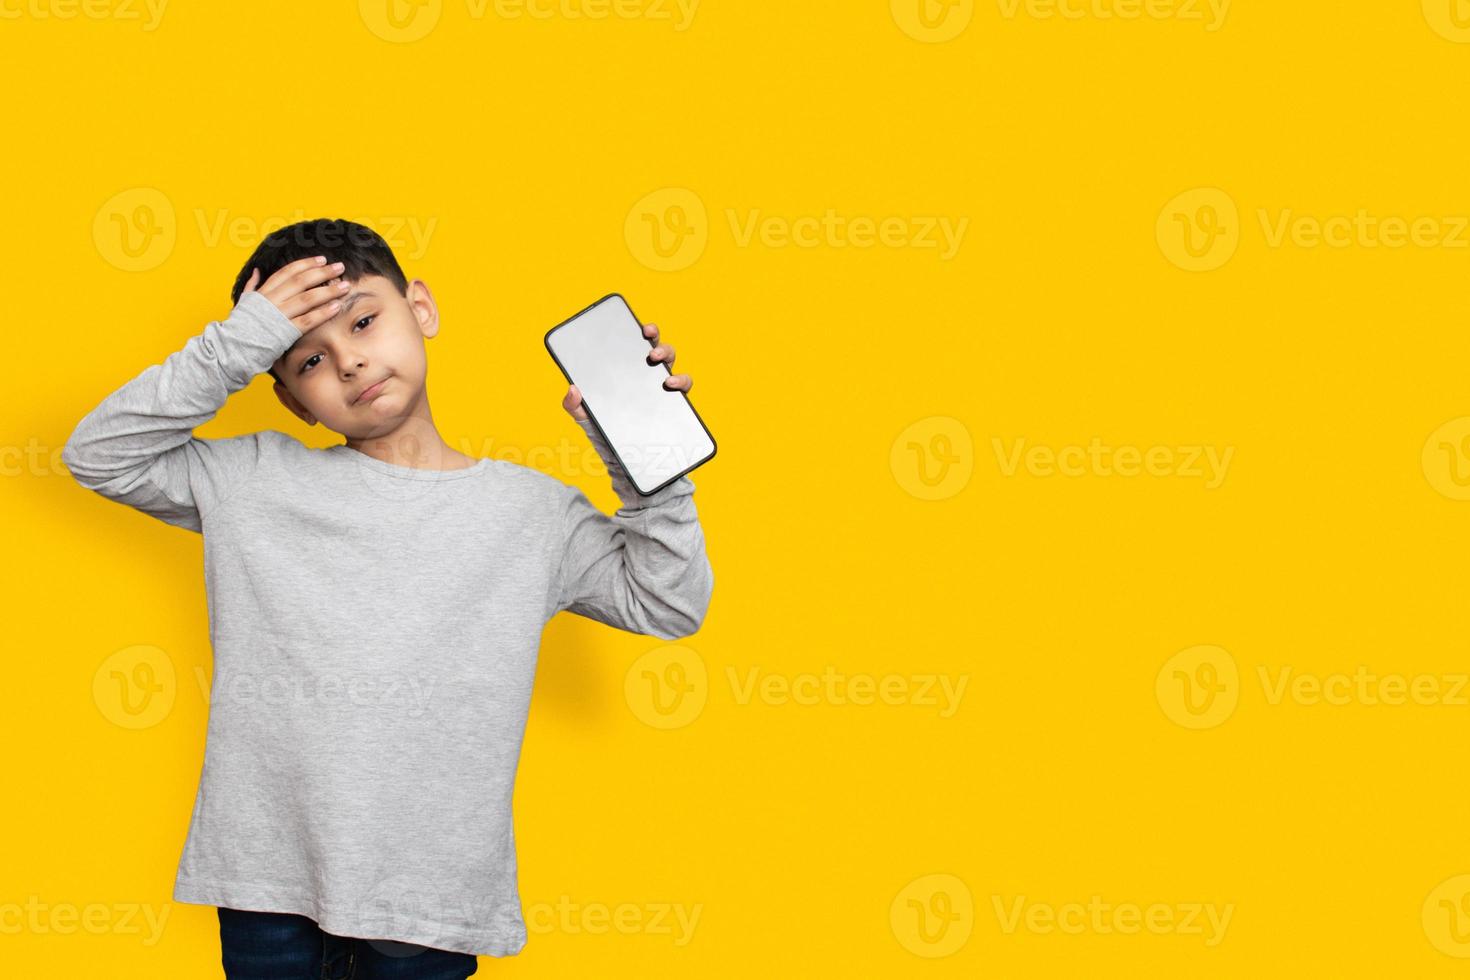 sorrir e chocar o garotinho na tela em branco da camisa verde cinza do telefone móvel no espaço de cópia de fundo amarelo foto